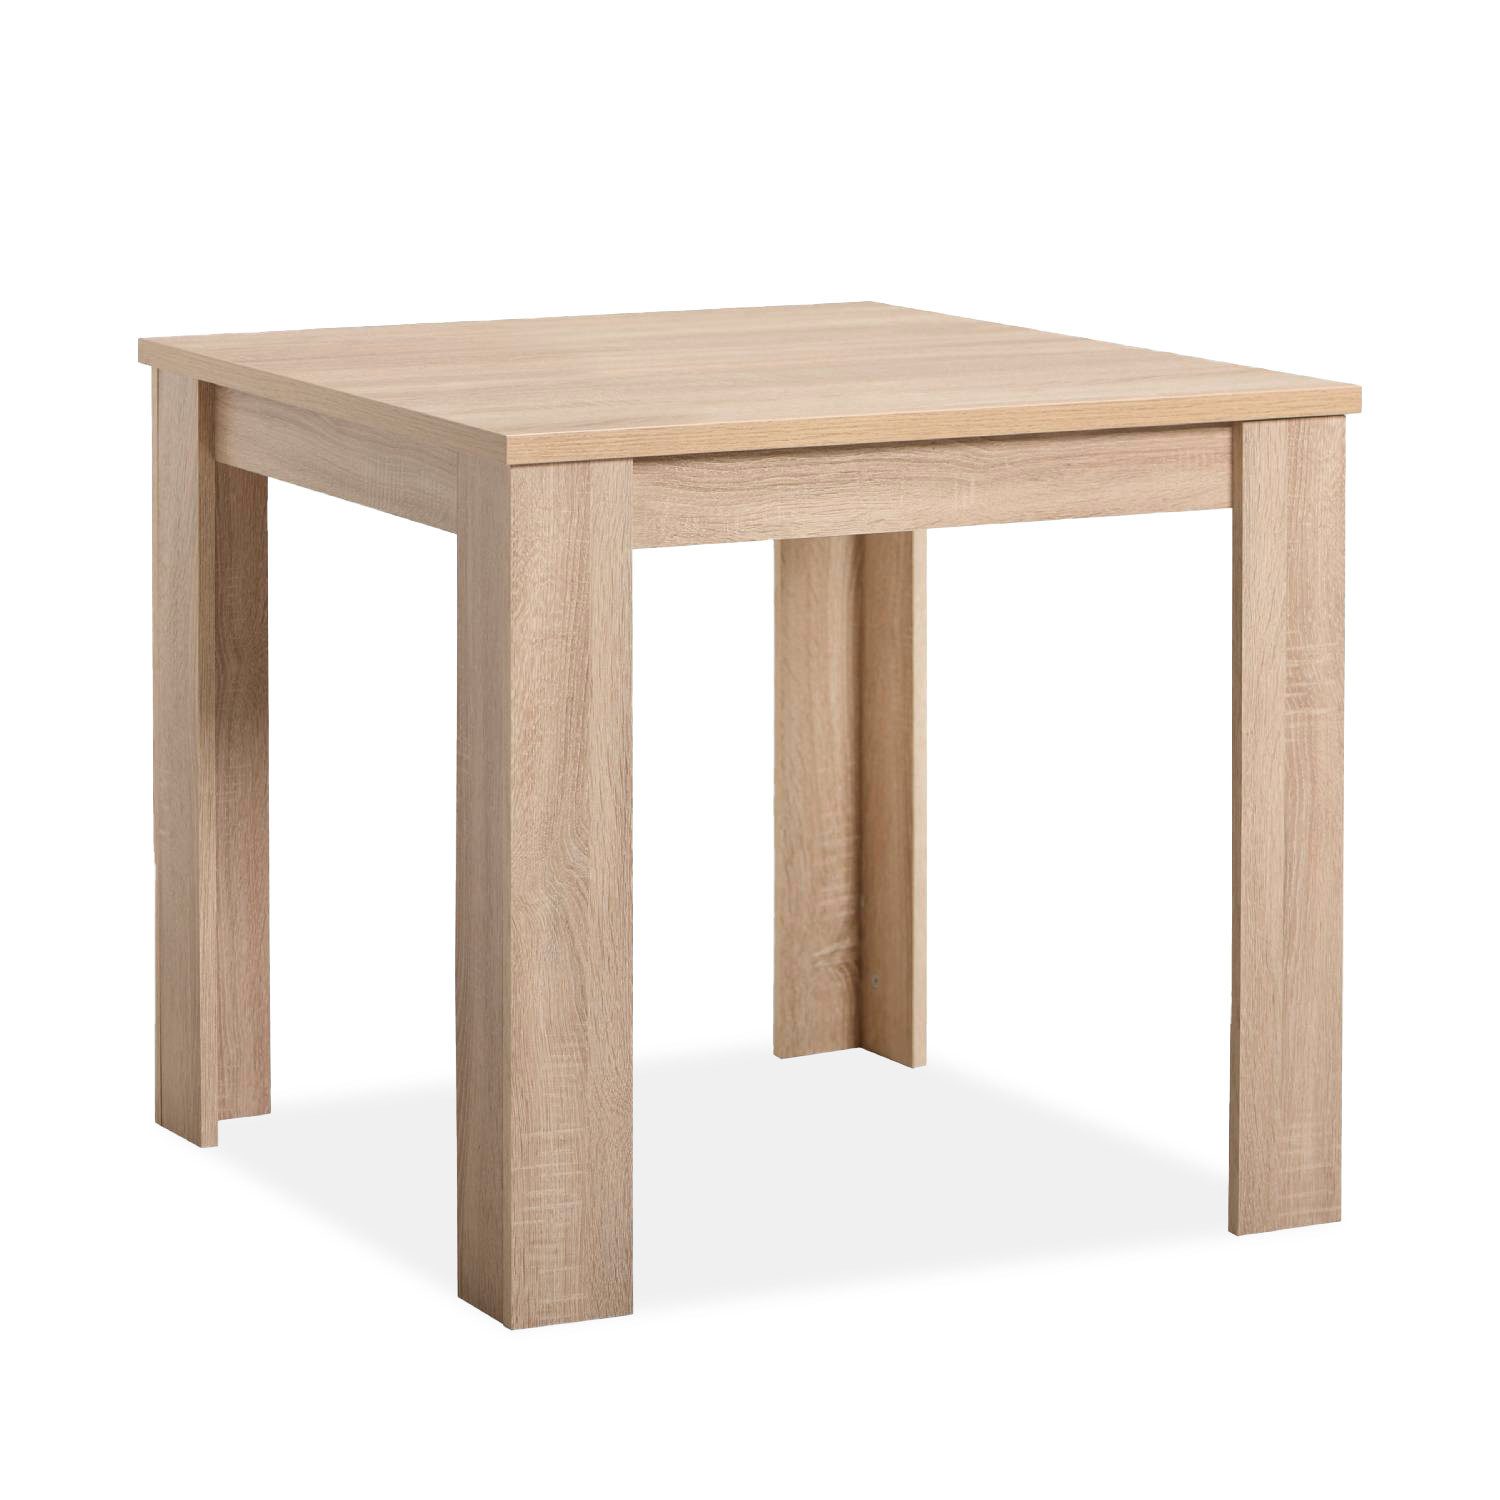 Homestyle4u Esstisch Esszimmertisch Holztisch Küchentisch 80x80 Holz Massiv Weiß oder Eiche